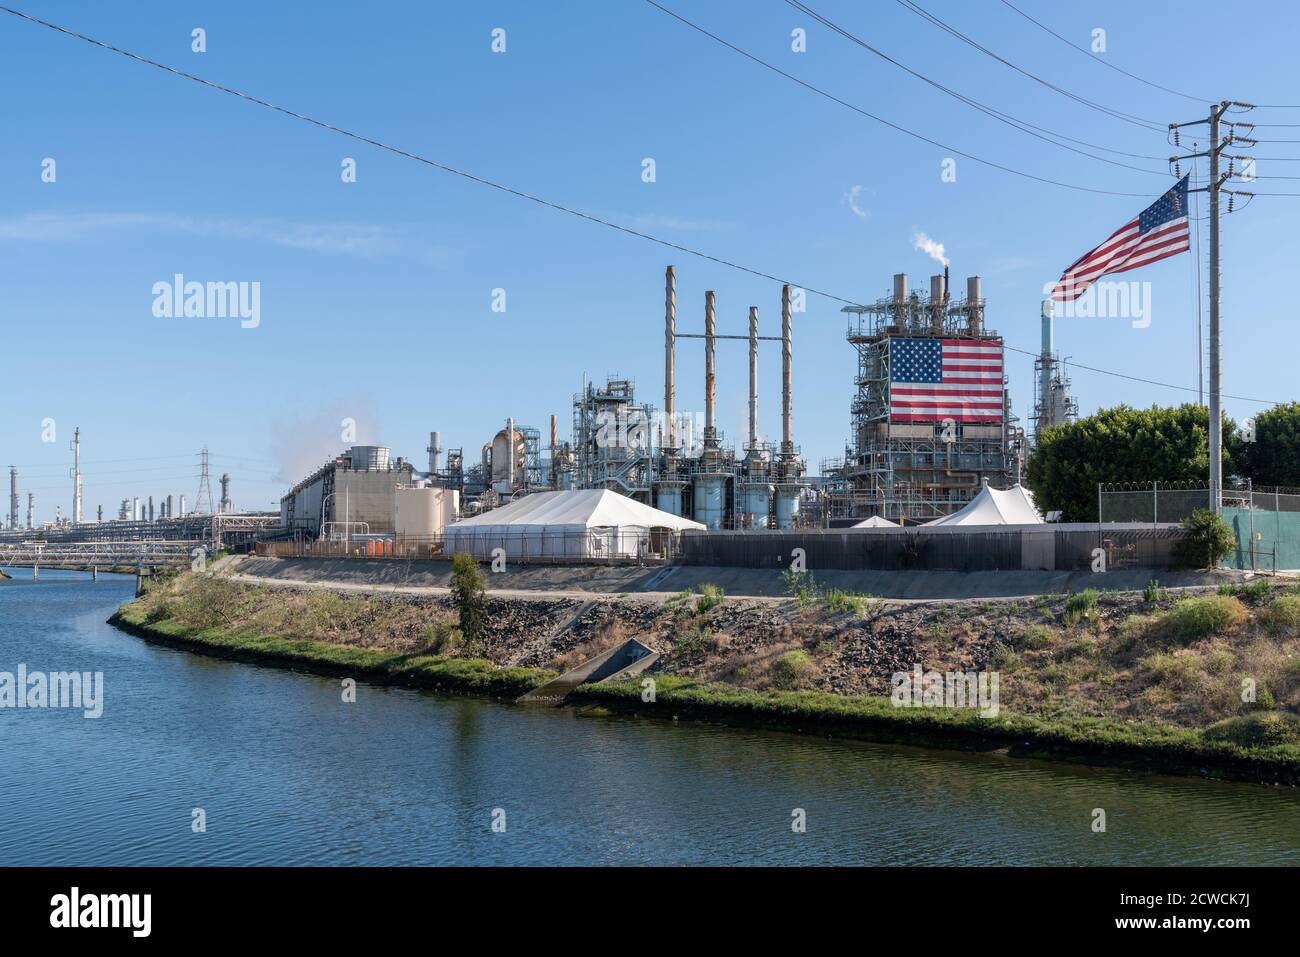 LONG BEACH, STATI UNITI - 25 maggio 2020: La raffineria di Los Angeles di Marathon Petroleum è la più grande raffineria della West Coast con una capacità di petrolio greggio Foto Stock